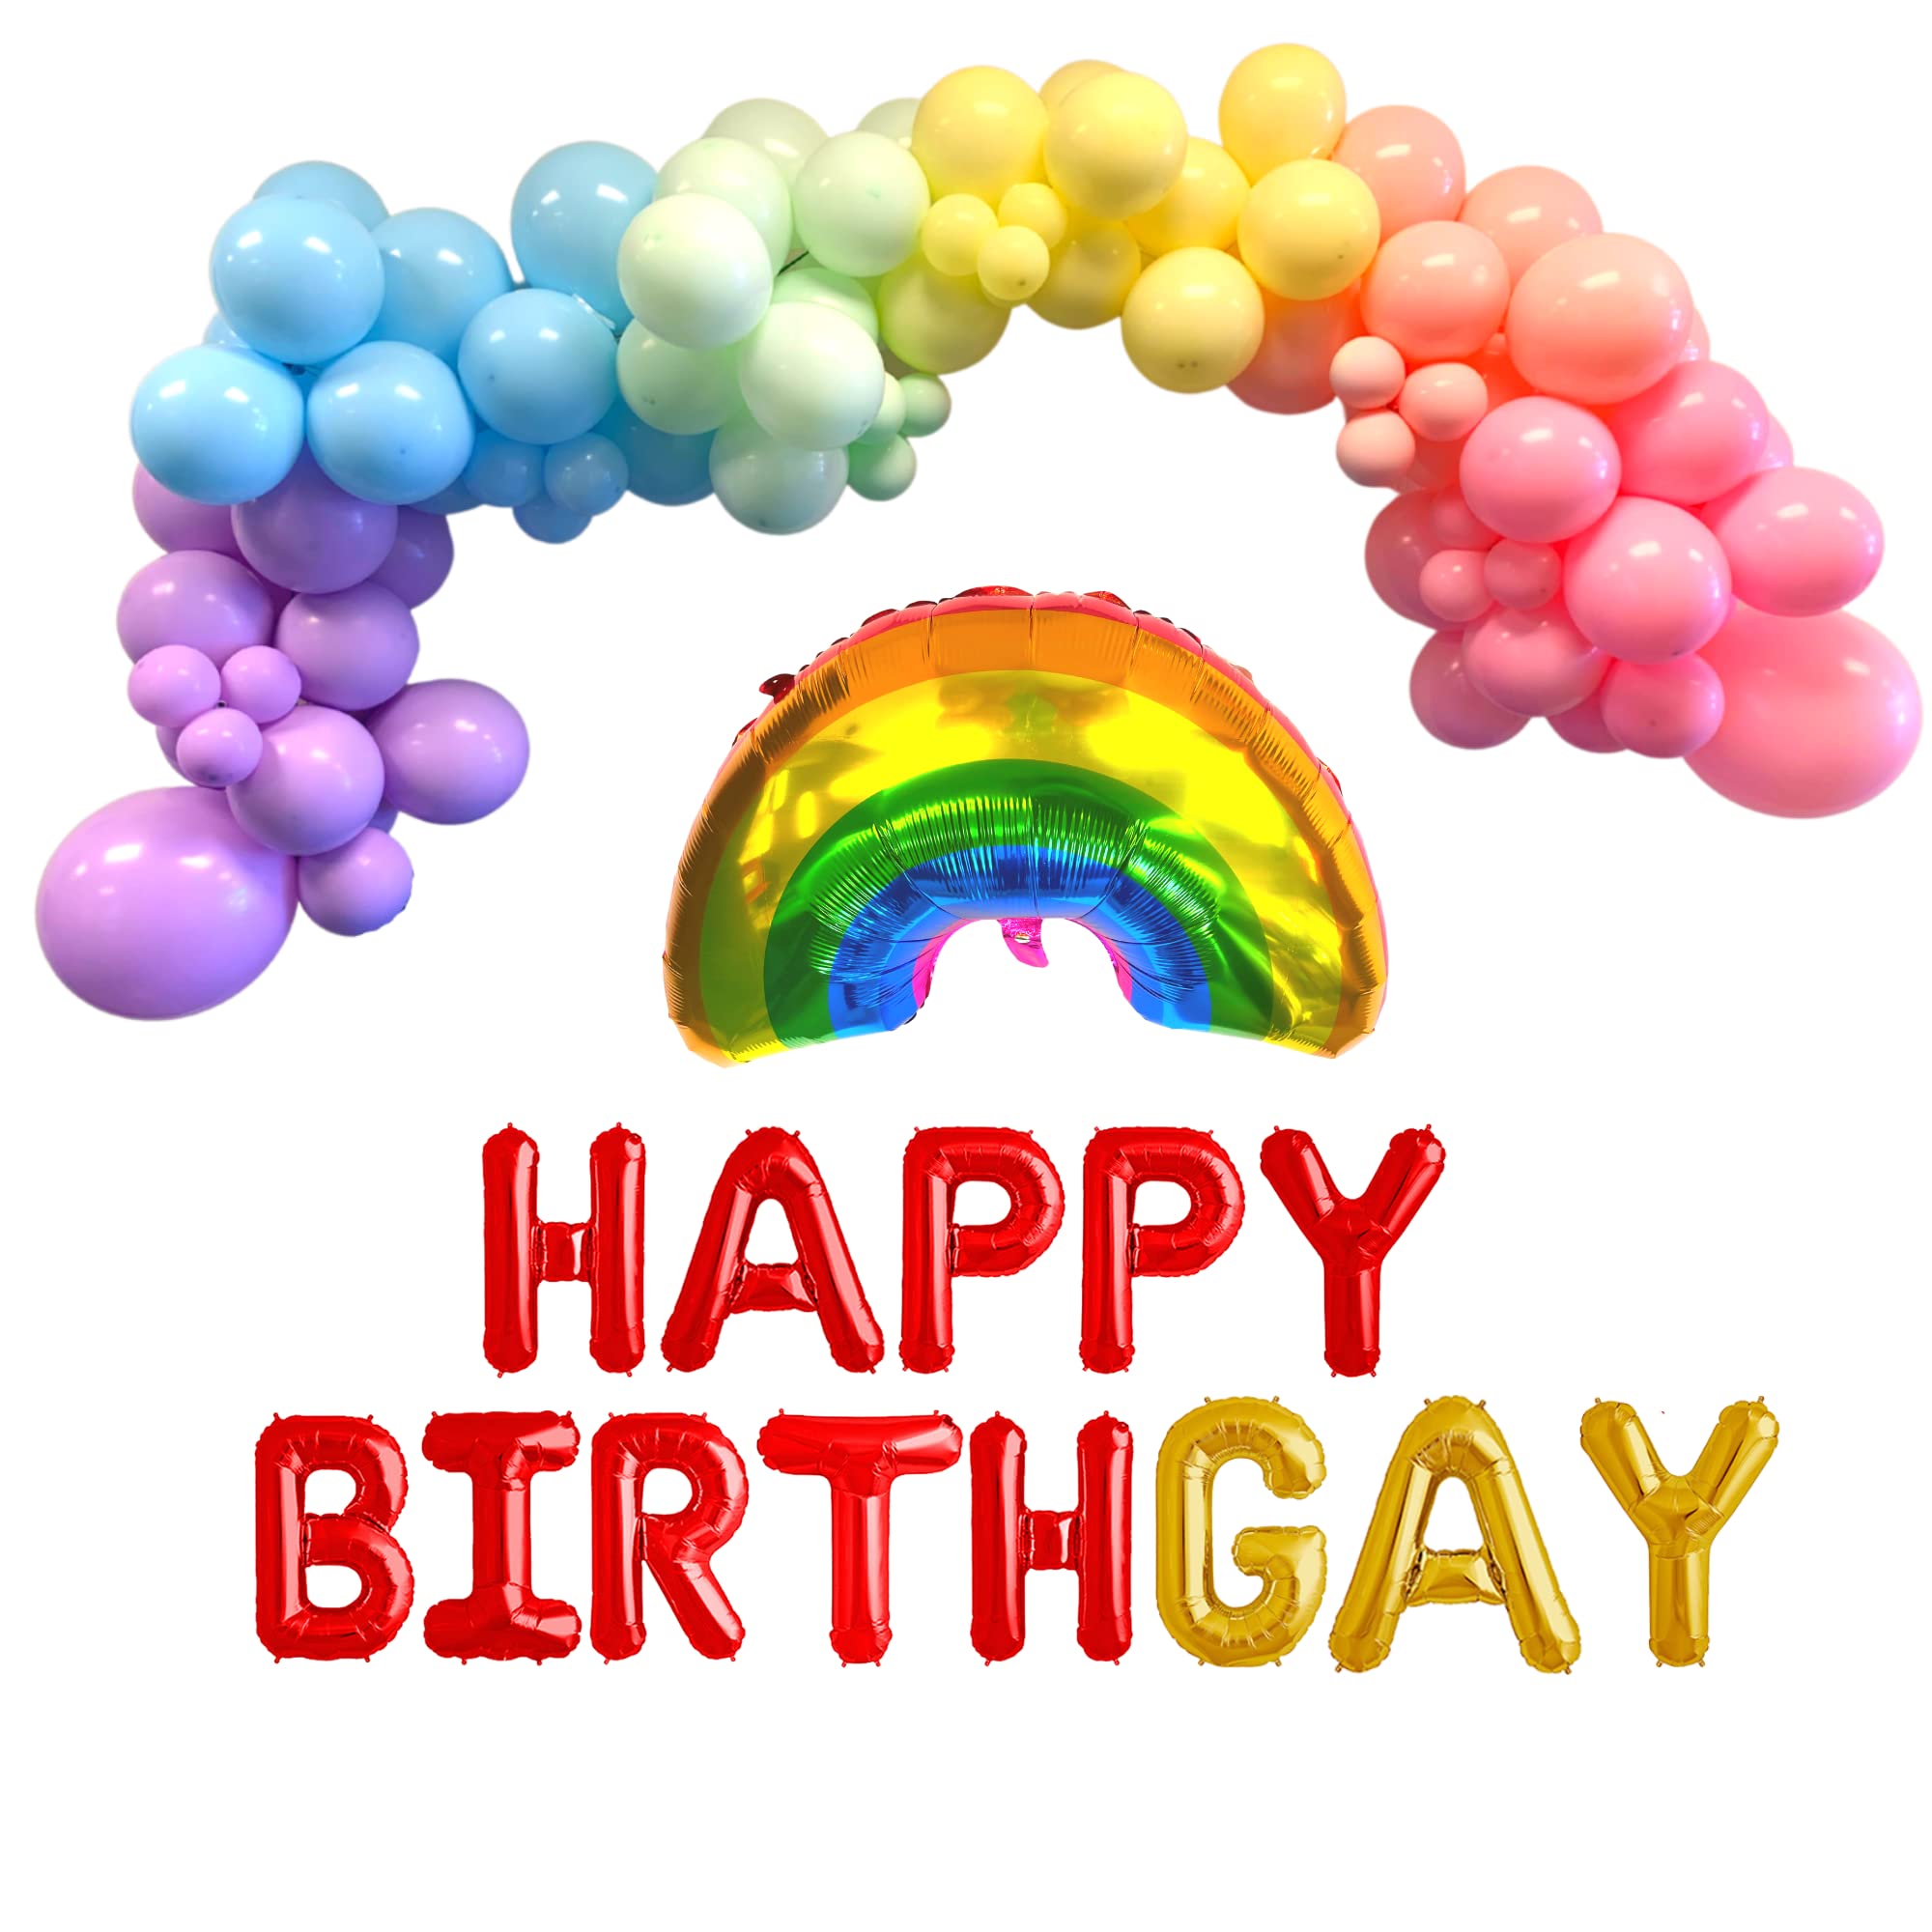 feliz cumpleaños gay